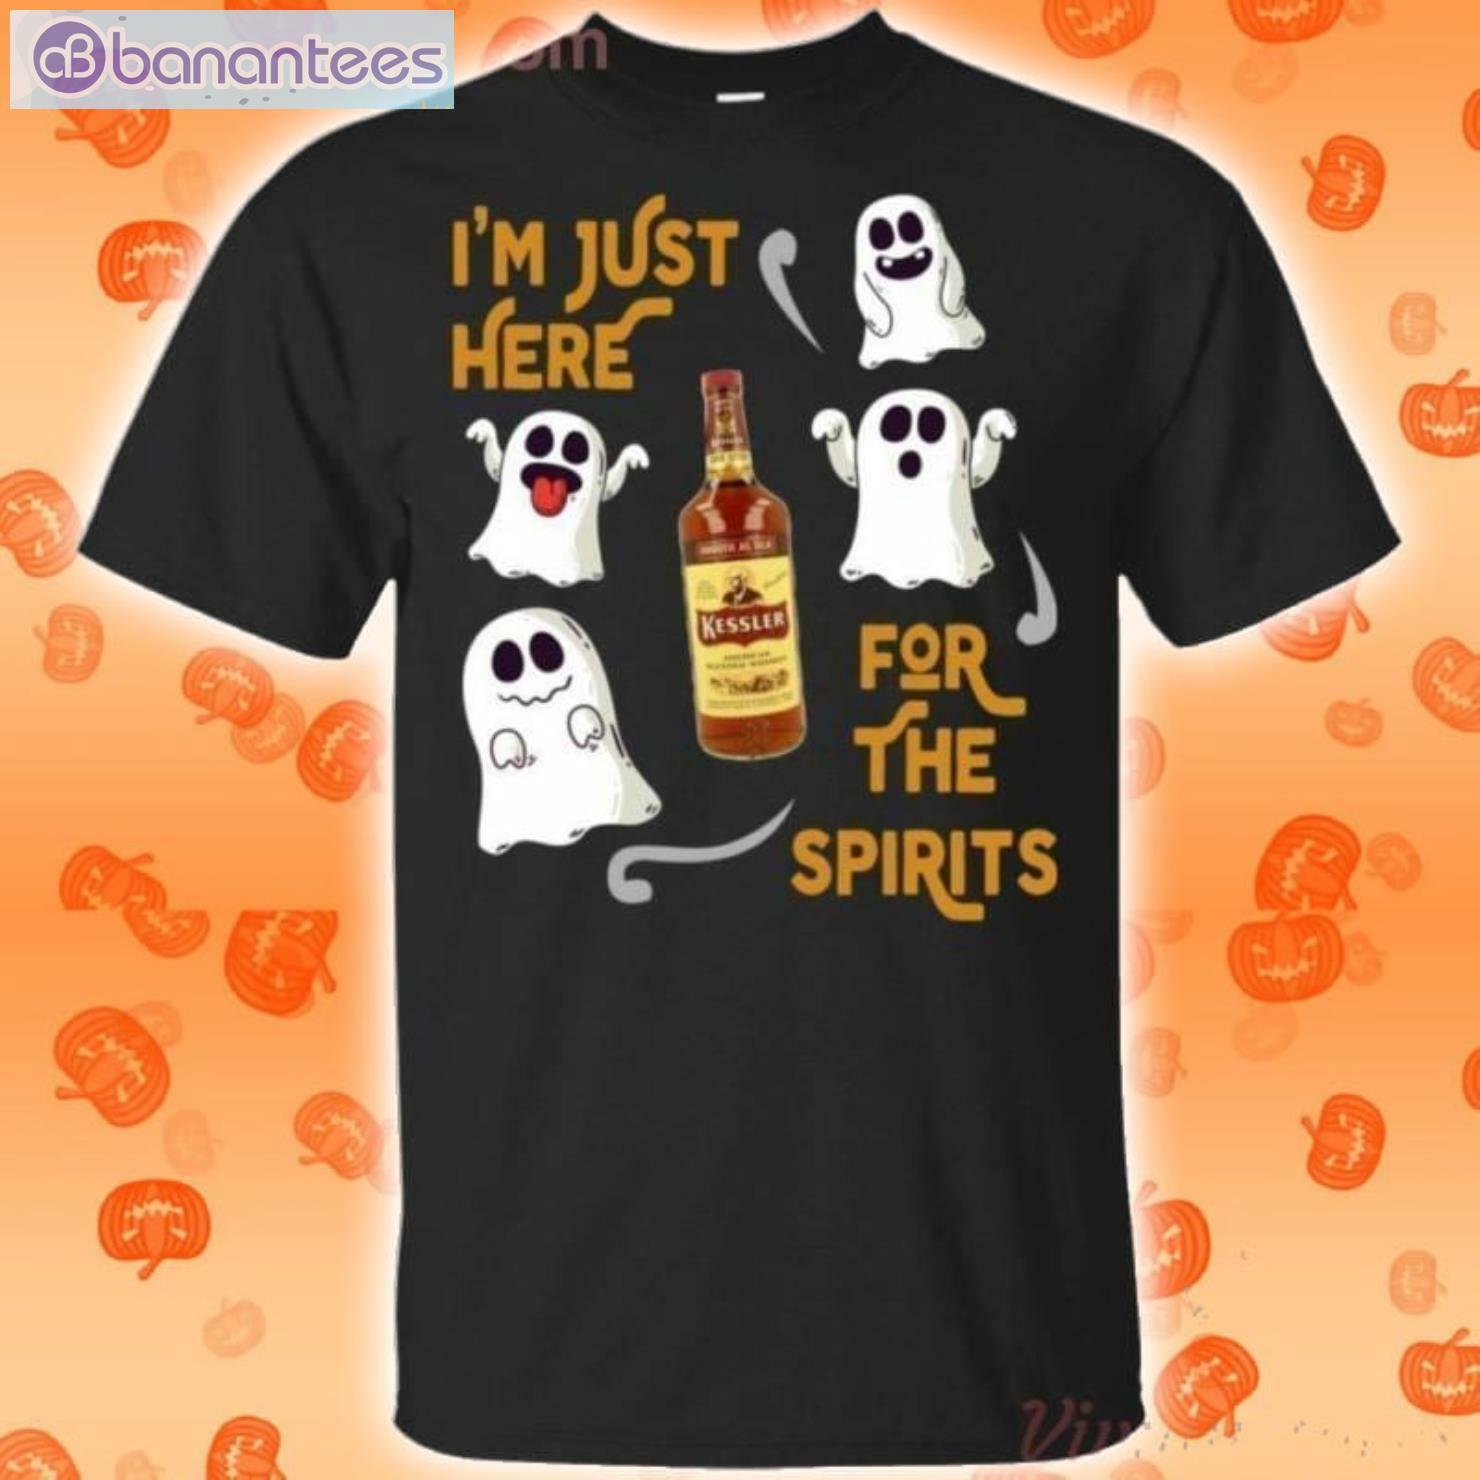 I'm Just Here For The Spirits Kessler American Whisky Halloween T-Shirt